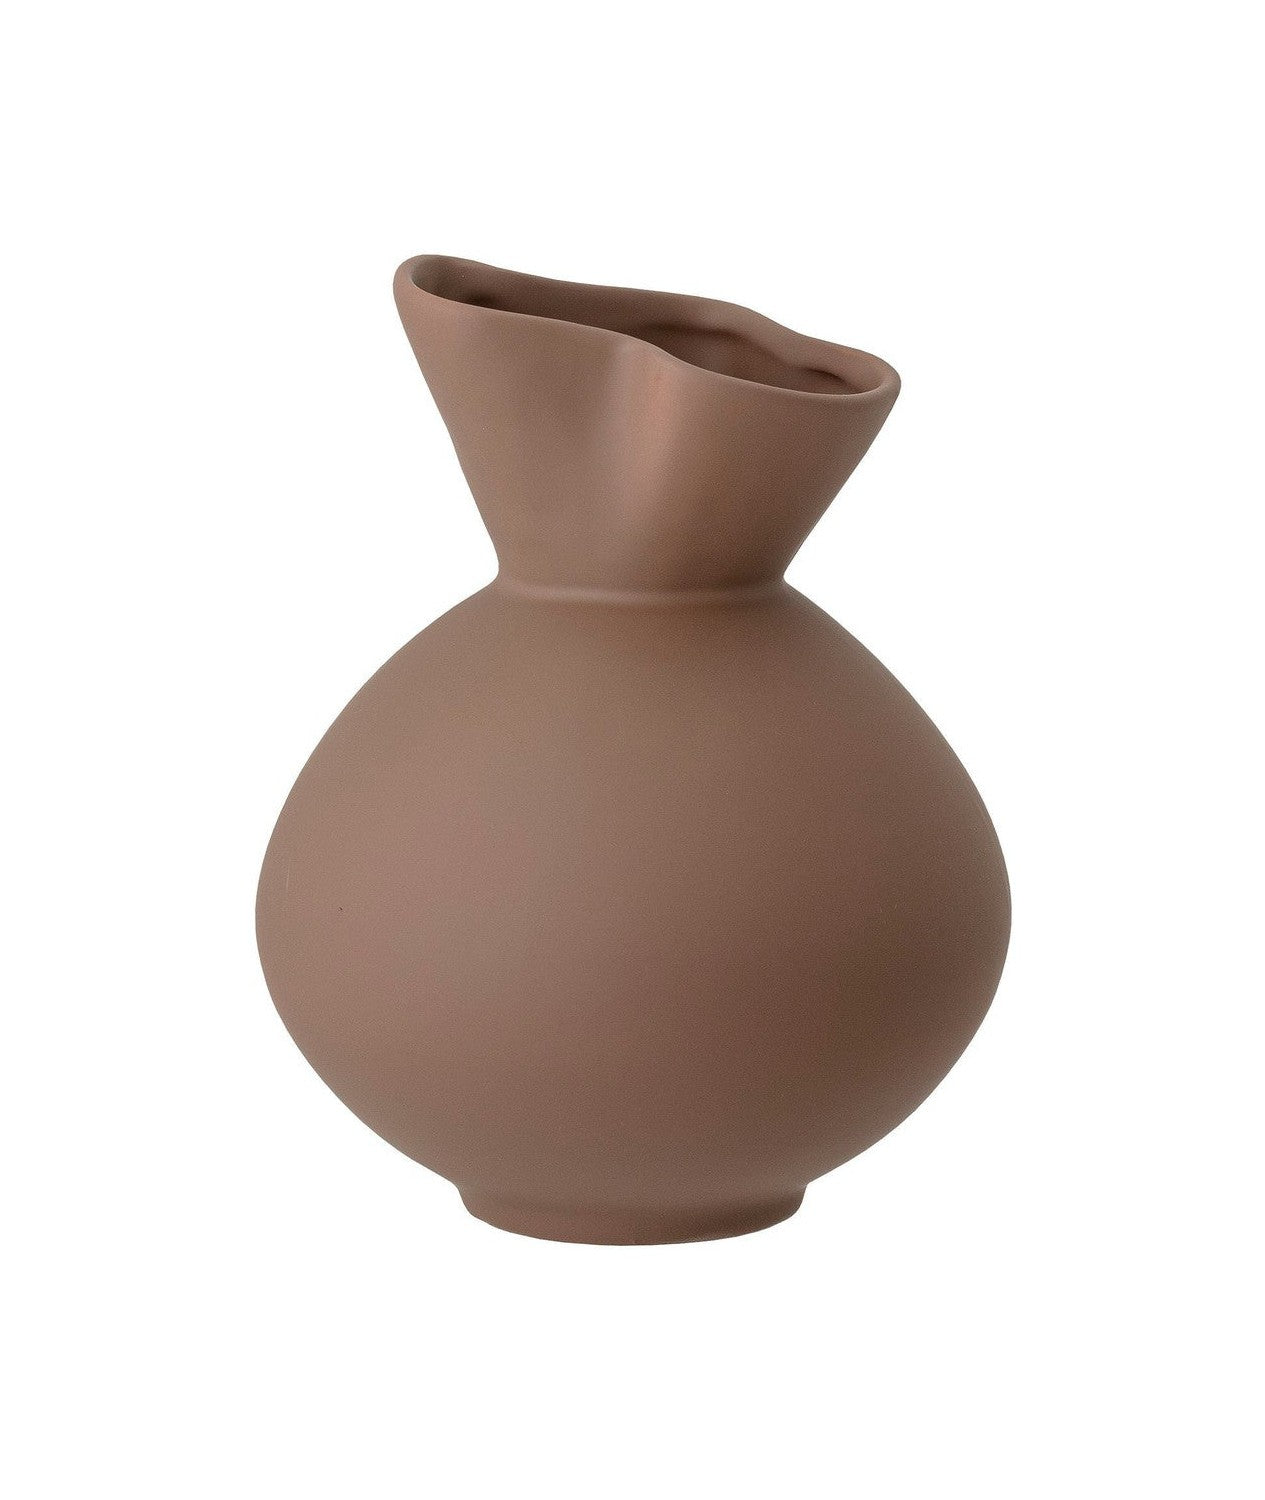 Bloomingville Nicita Vase, Brown, Stoneware